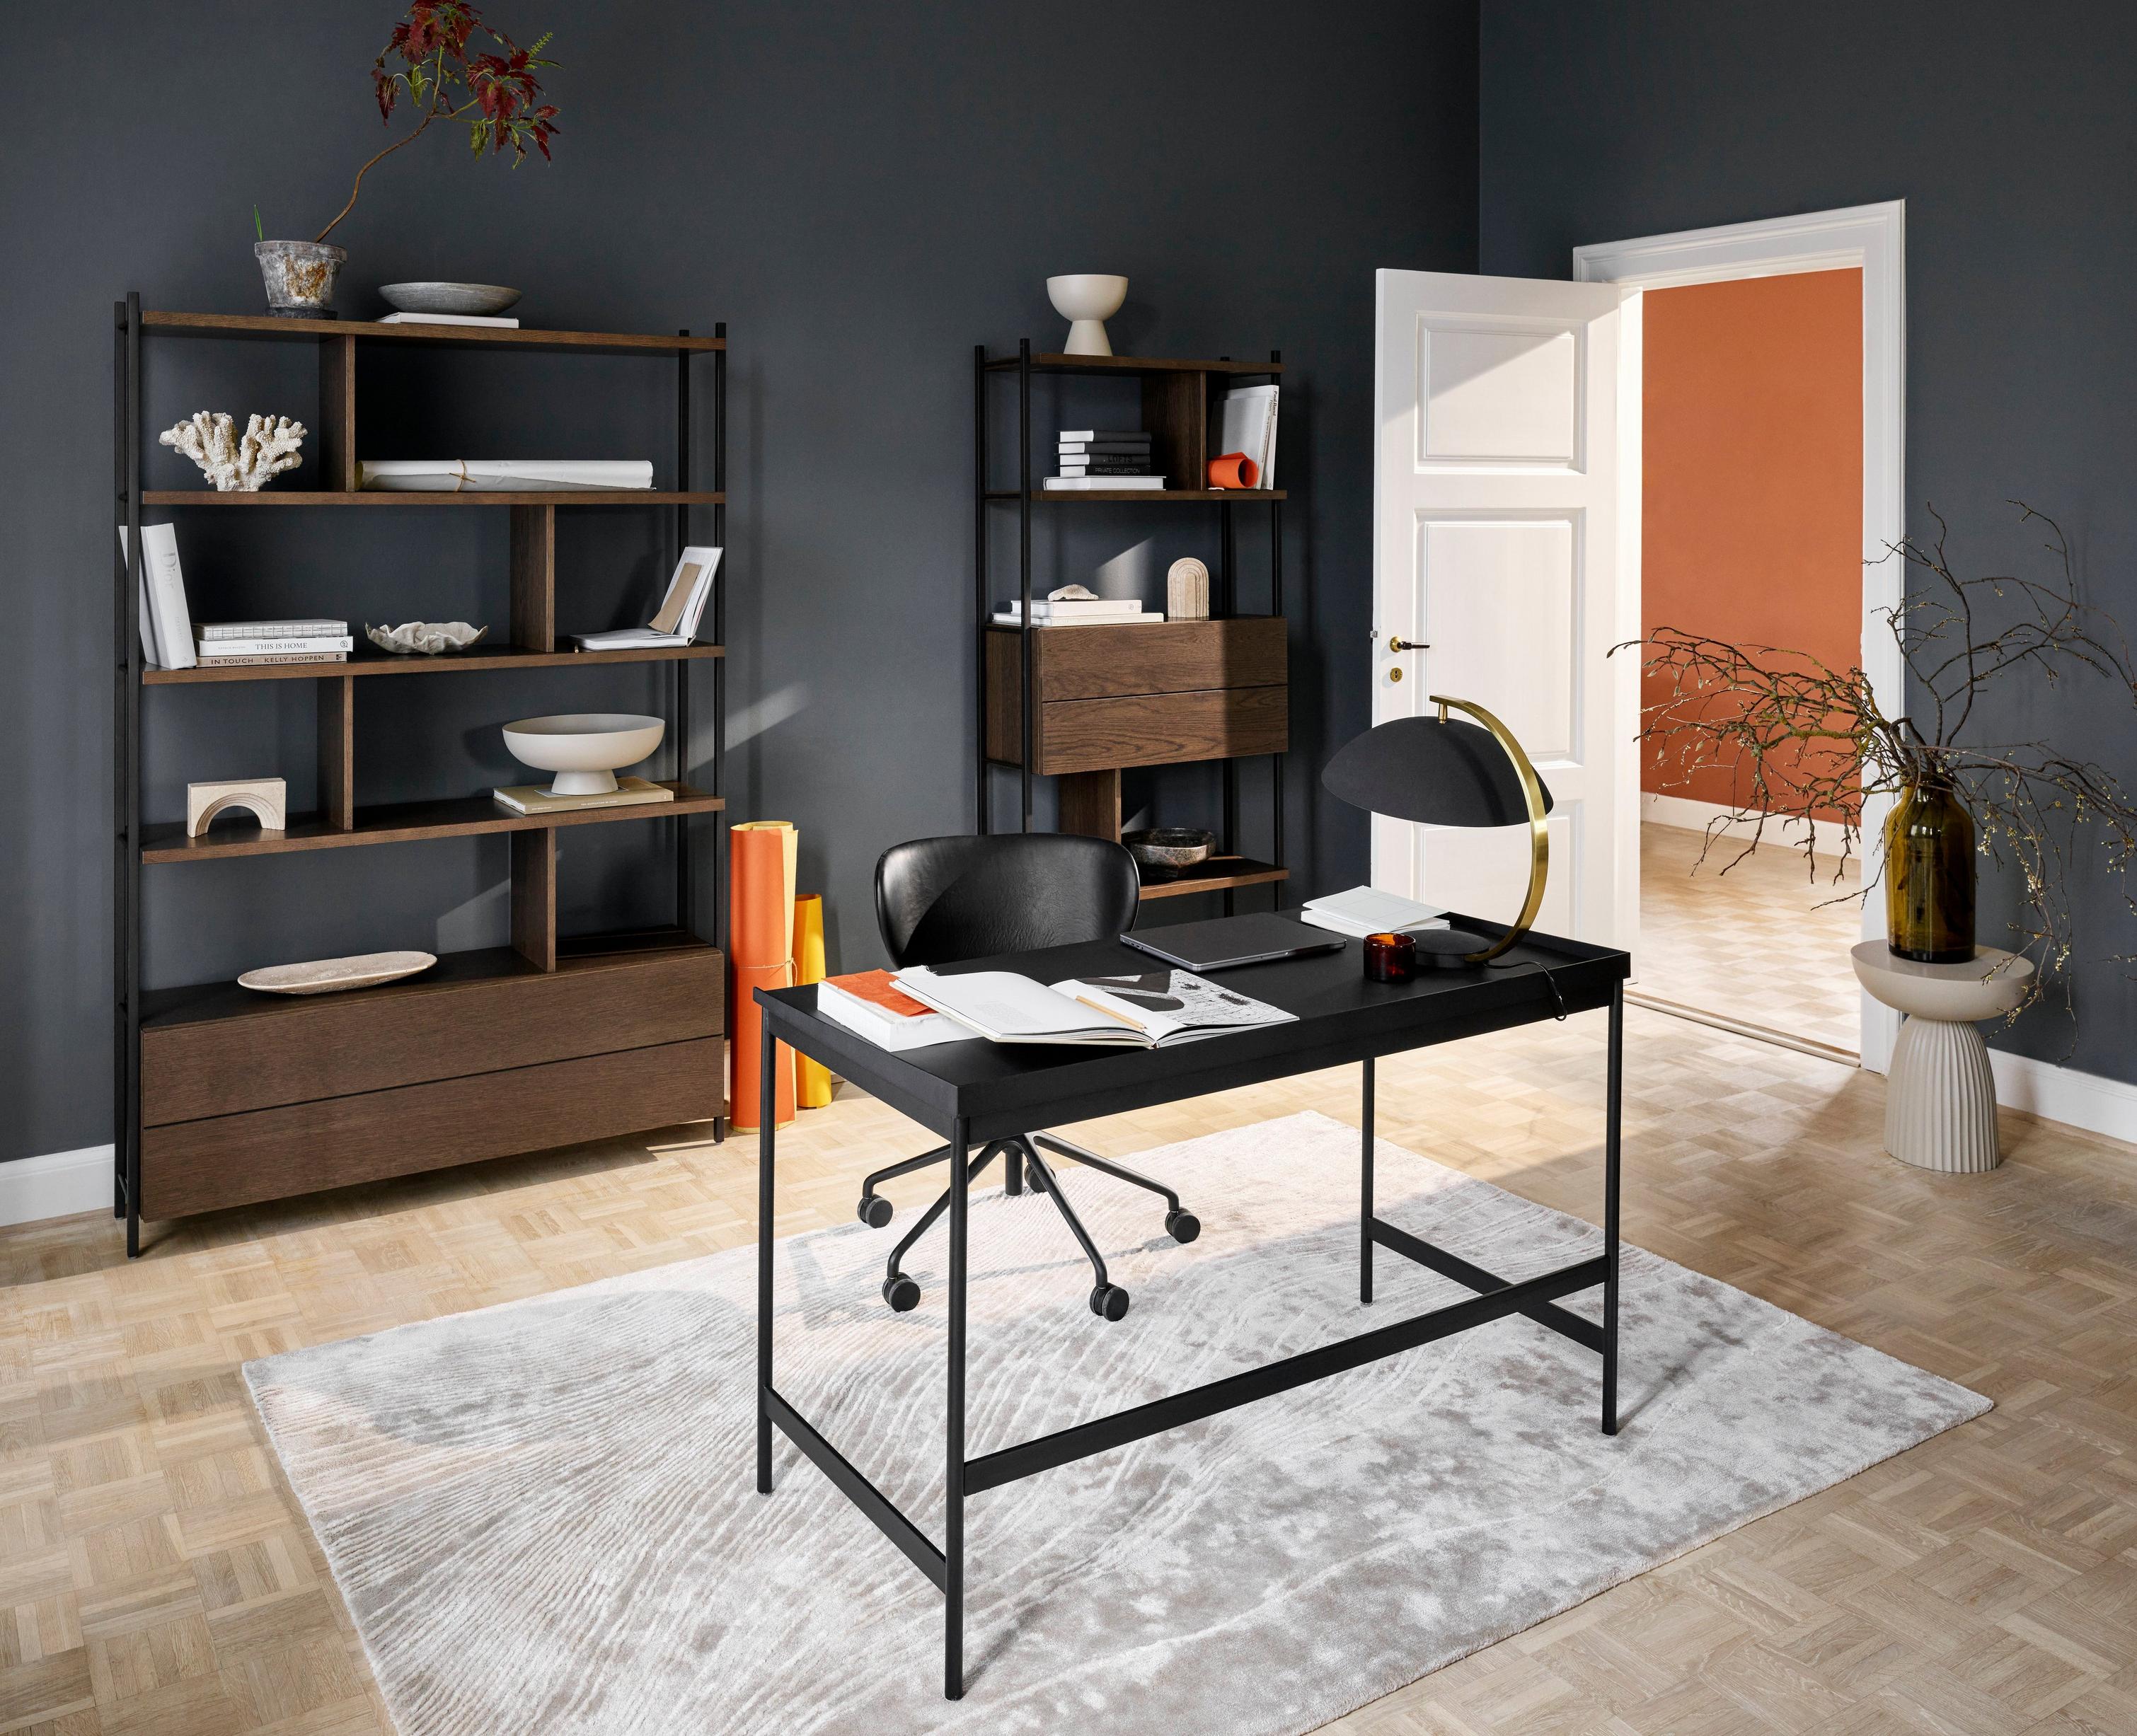 採用 Asti 辦公桌和有深色橡木實木貼面抽屜 Calgary 收納空間打造的精緻家庭辦公室